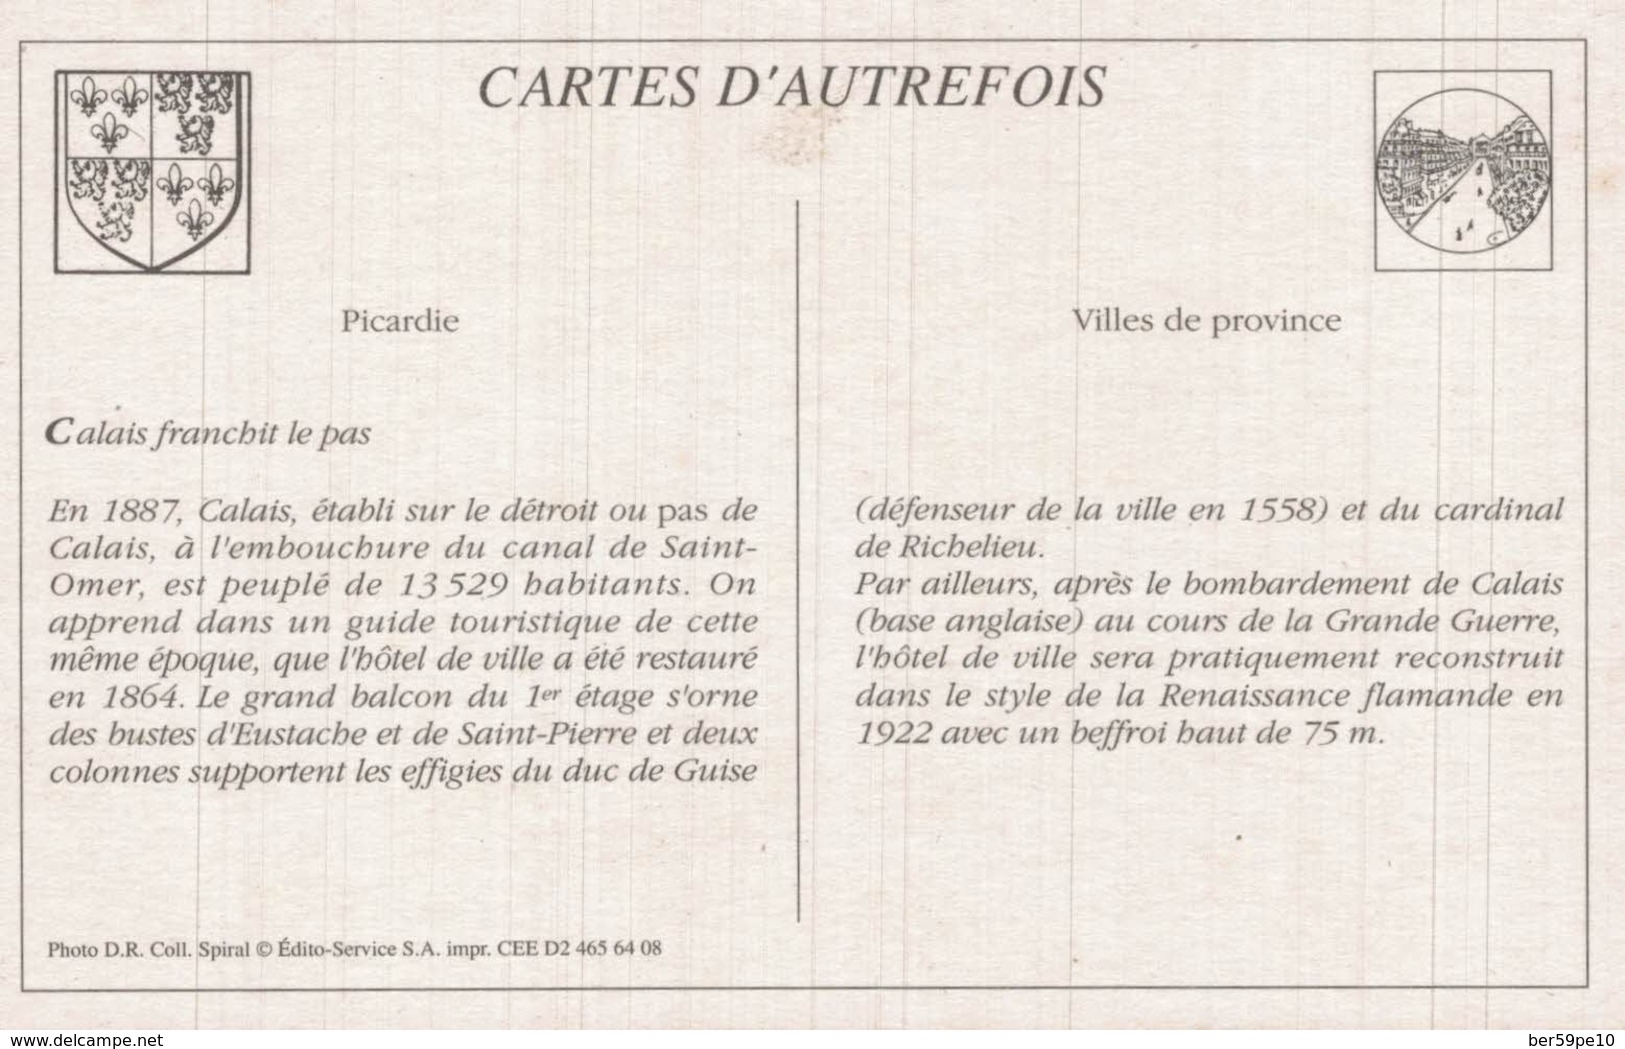 CARTE D'AUTREFOIS VILLES DE PROVINCE  PICARDIE  CALAIS FRANCHIT LE PAS - Picardie